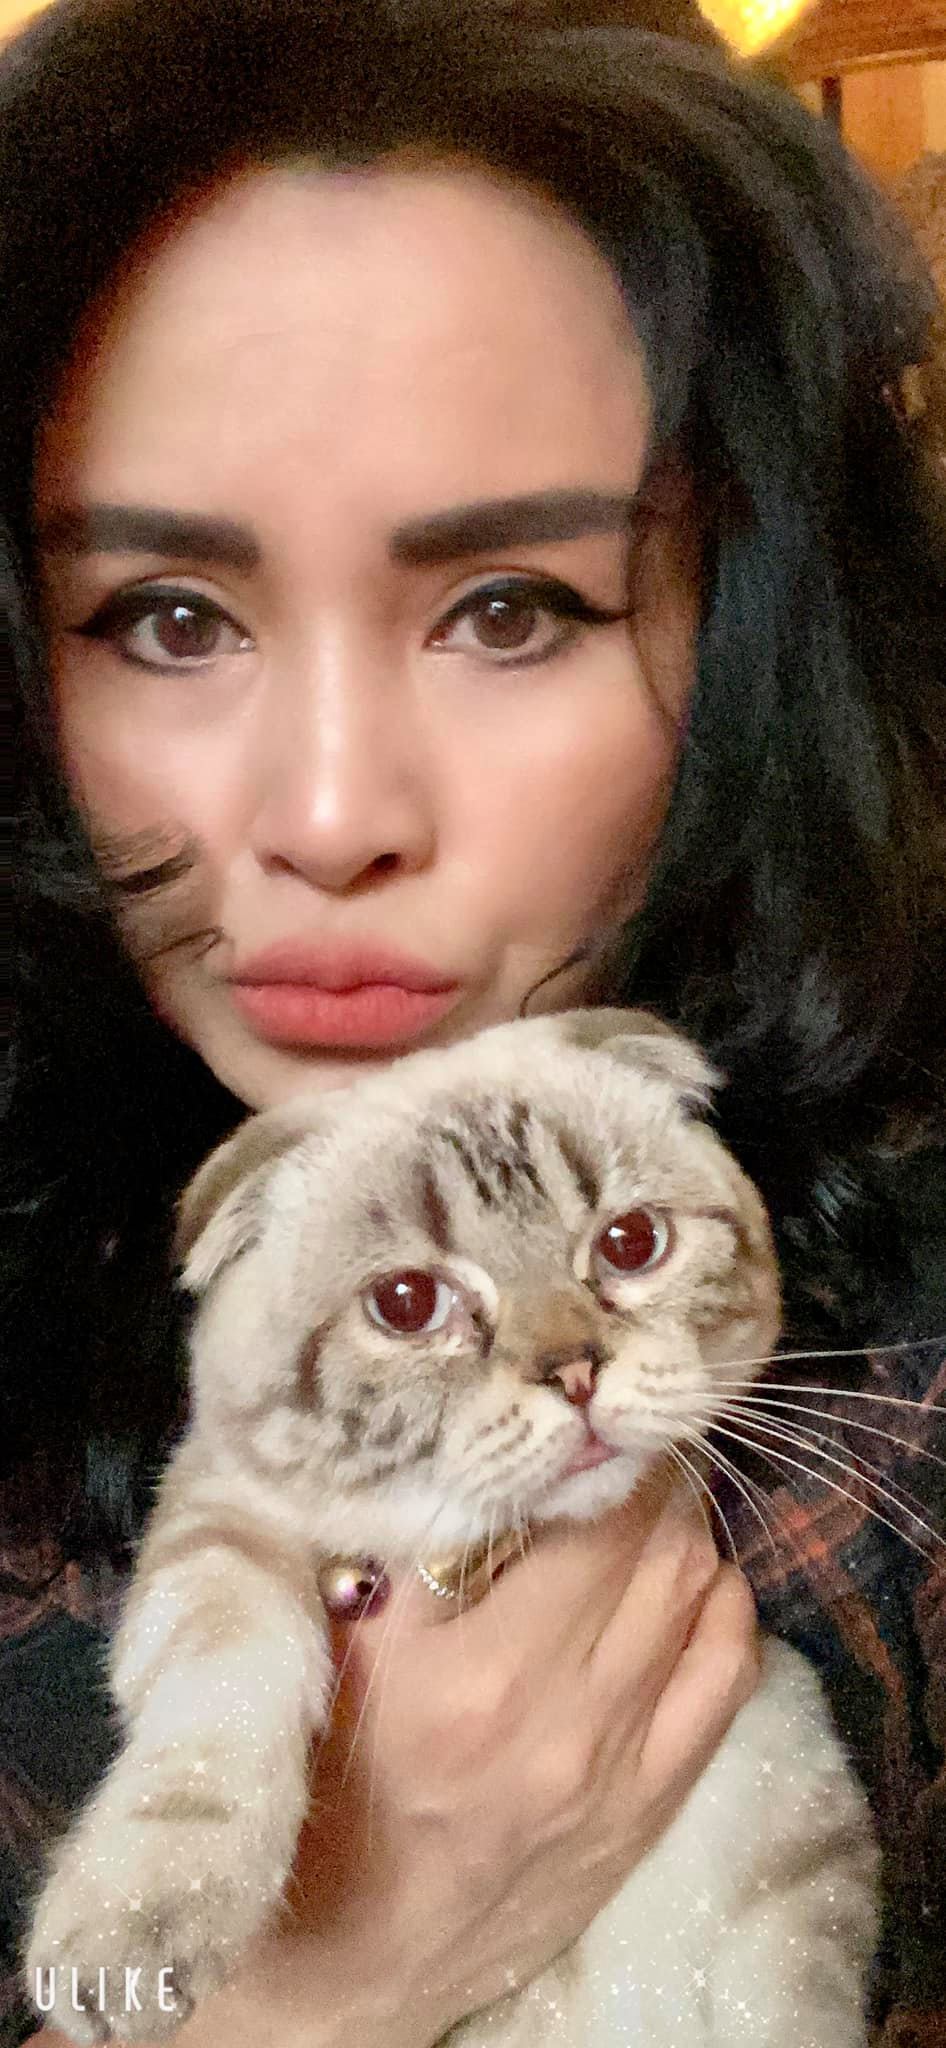 Diva Thanh Lam chụp ảnh với mèo cưng. Từ ngày công khai chuyện tình cảm với bạn trai bác sĩ, cô được khen ngợi ngày càng trẻ trung, yêu đời.